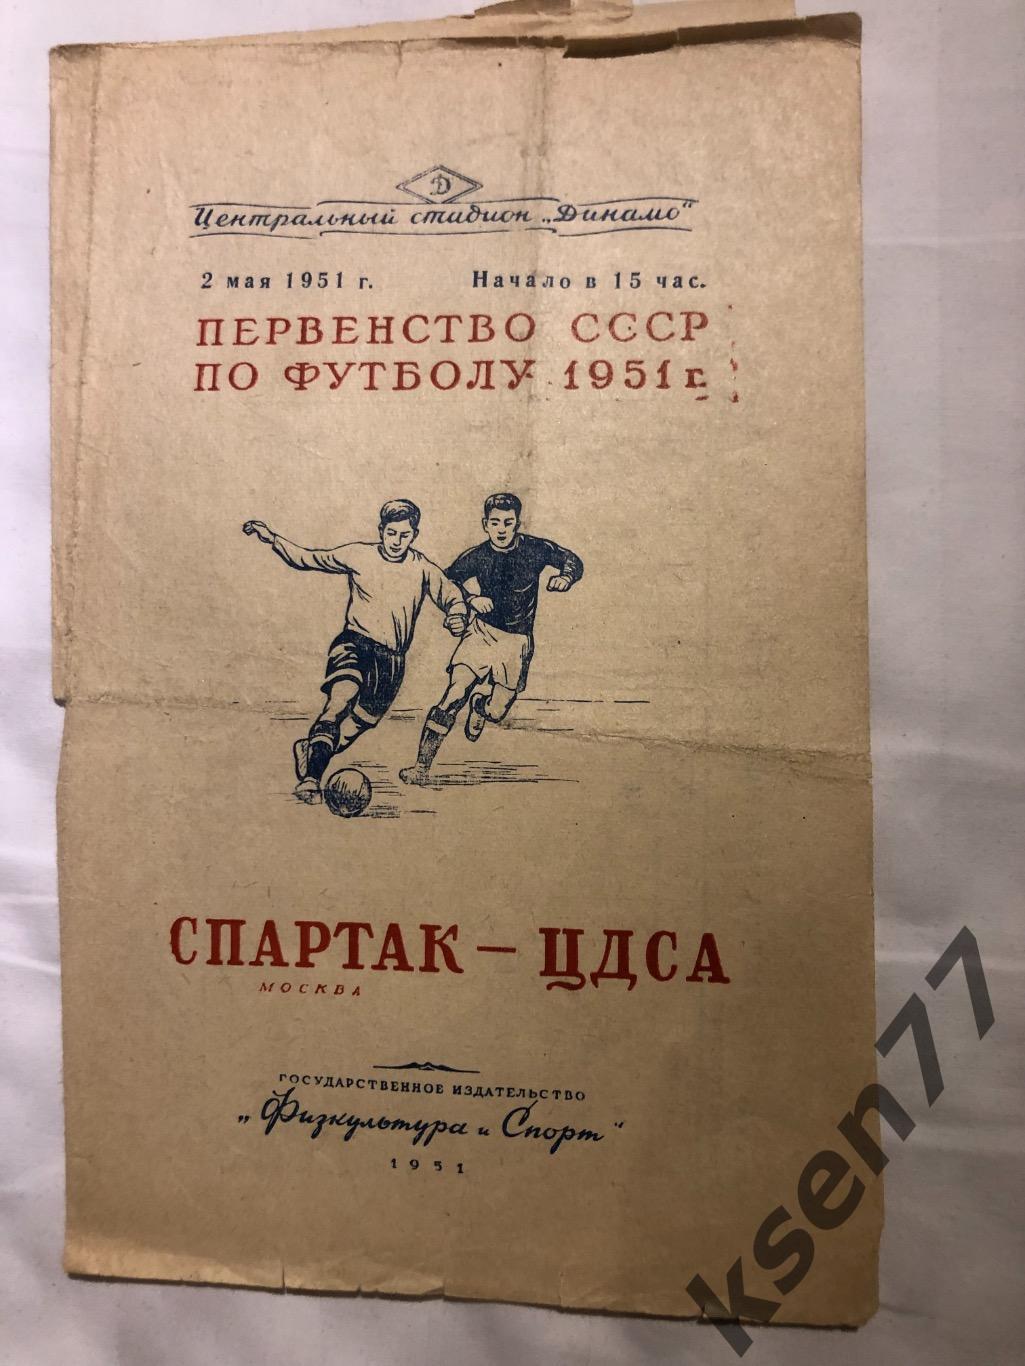 Спартак Москва- ЦДСА - 02.05.1951.